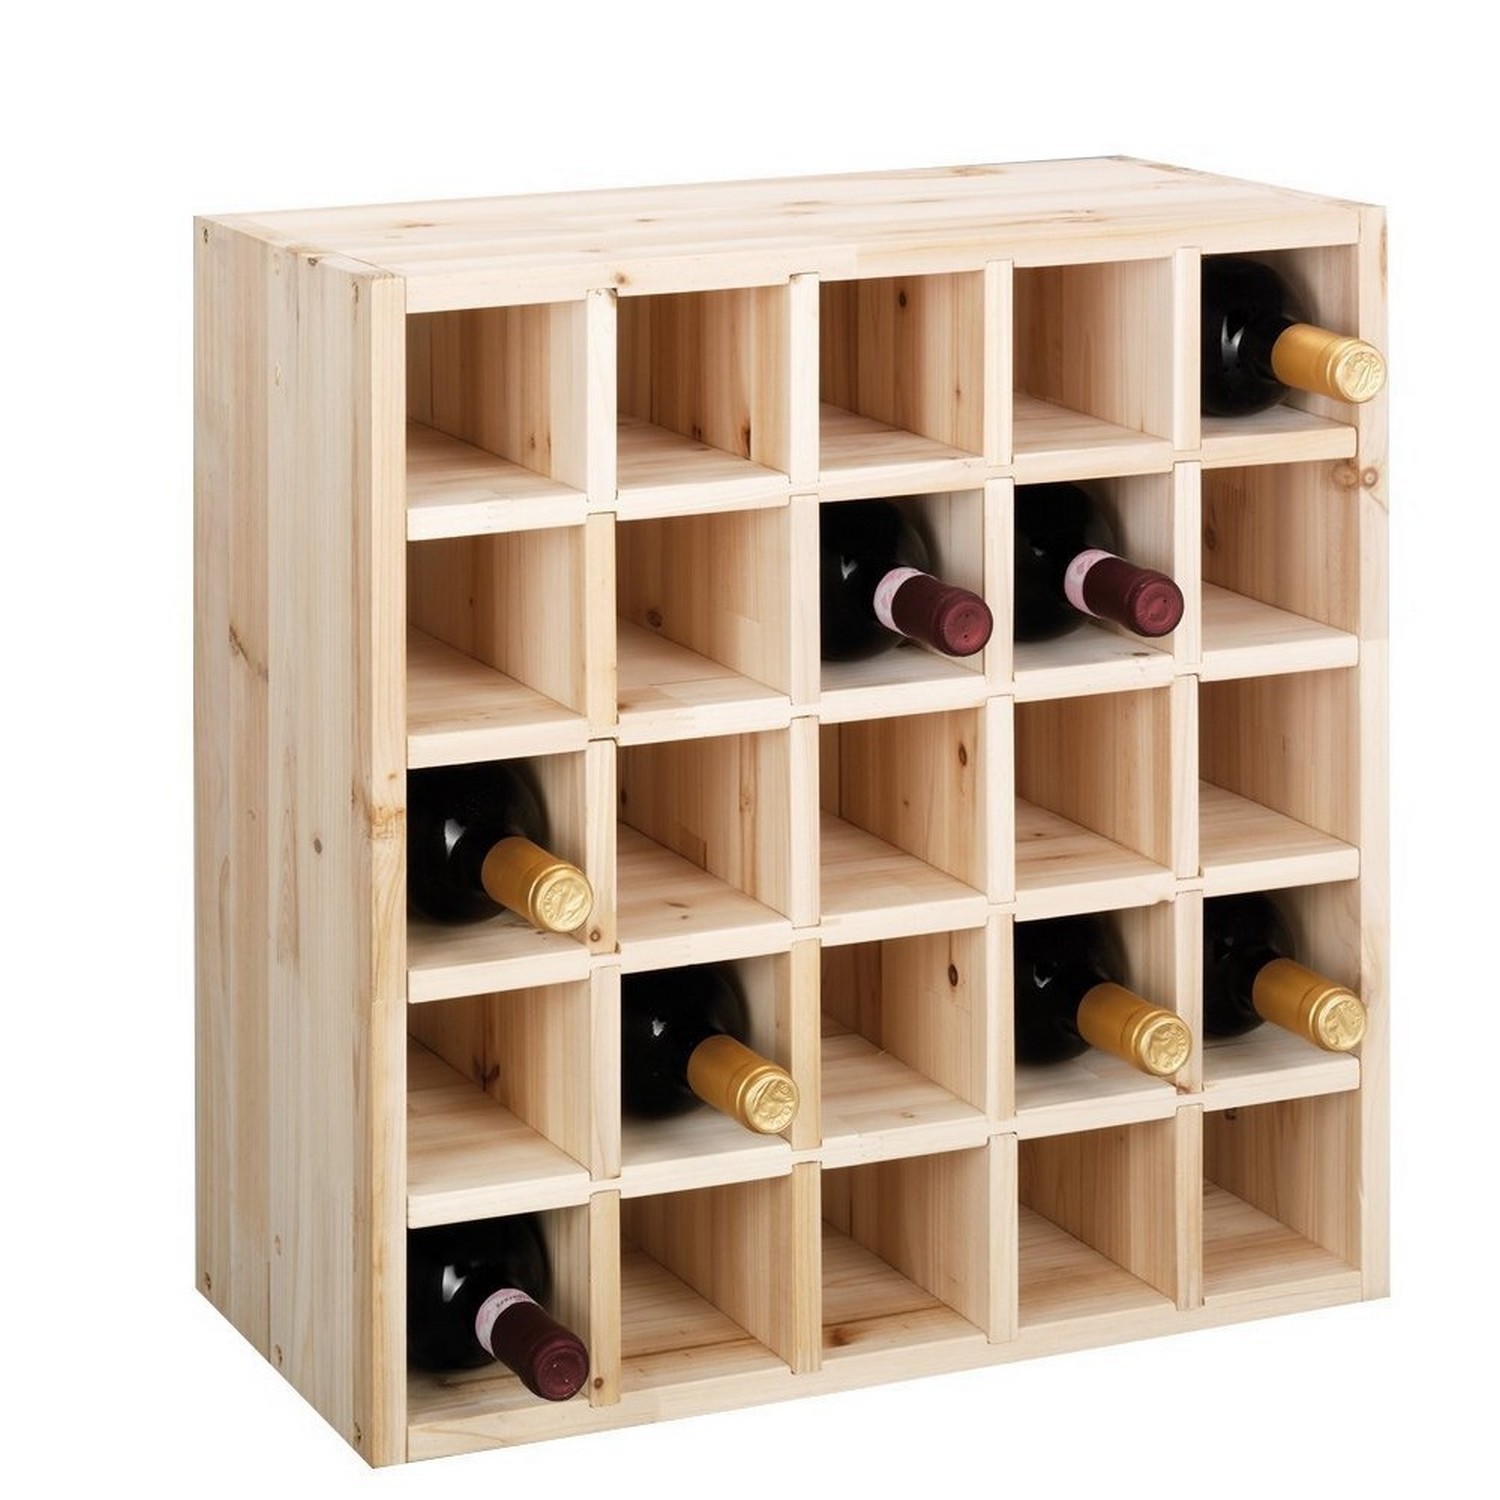 Casier à bouteille - Bois - Pour jusqu'à 42 bouteilles - Royal Catering  Casier à vin Range bouteille